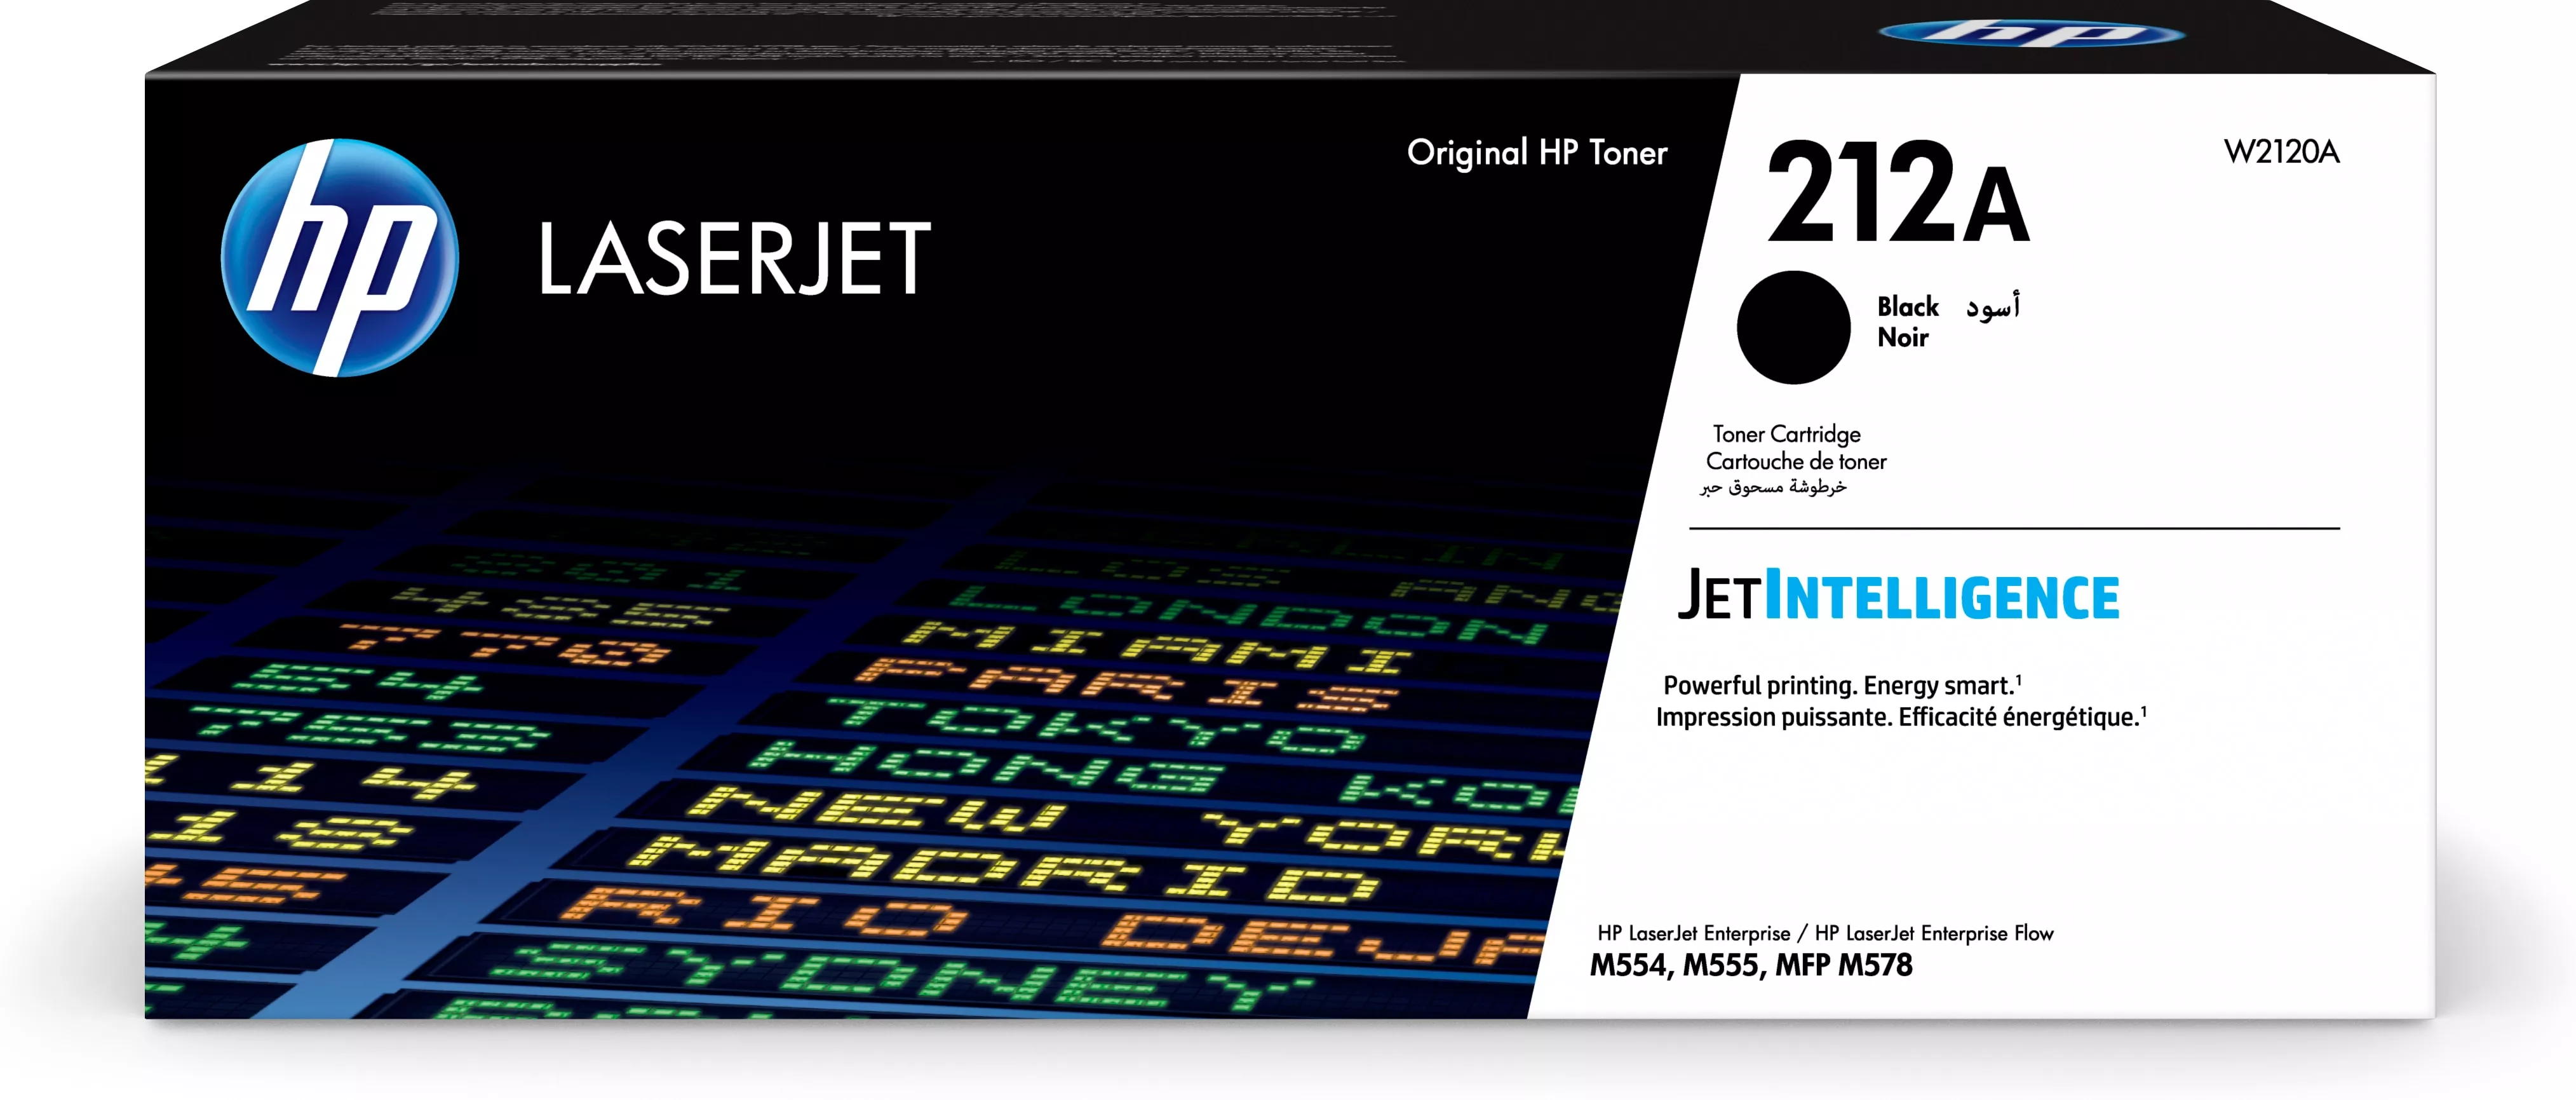 Achat HP 212A Black Original LaserJet Toner Cartridge au meilleur prix